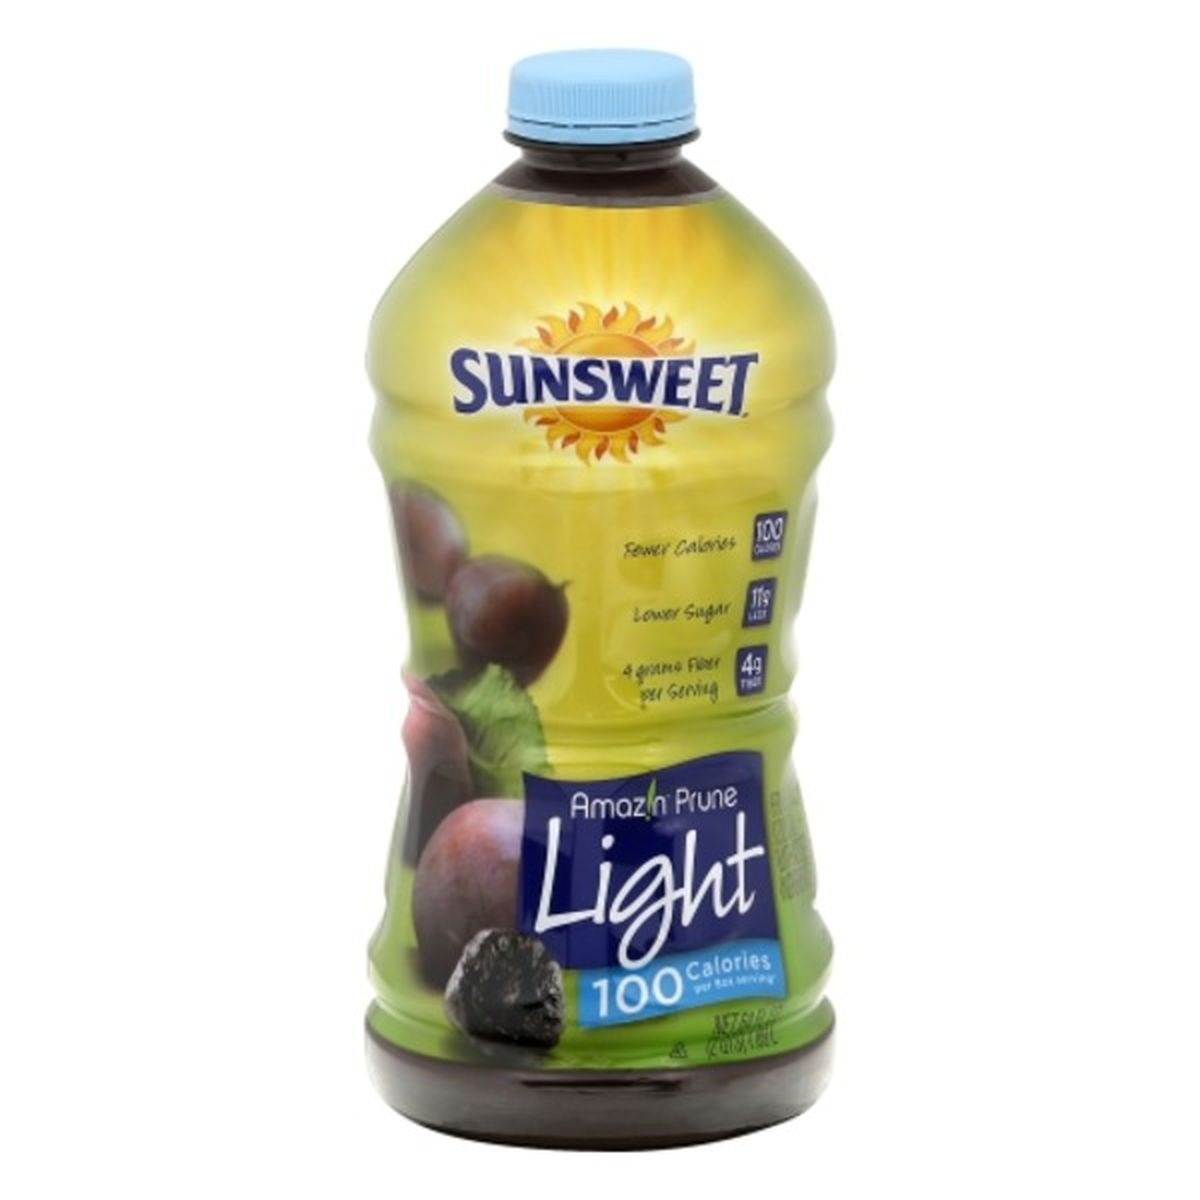 Calories in Sunsweet Amazin Prunes Juice, Light